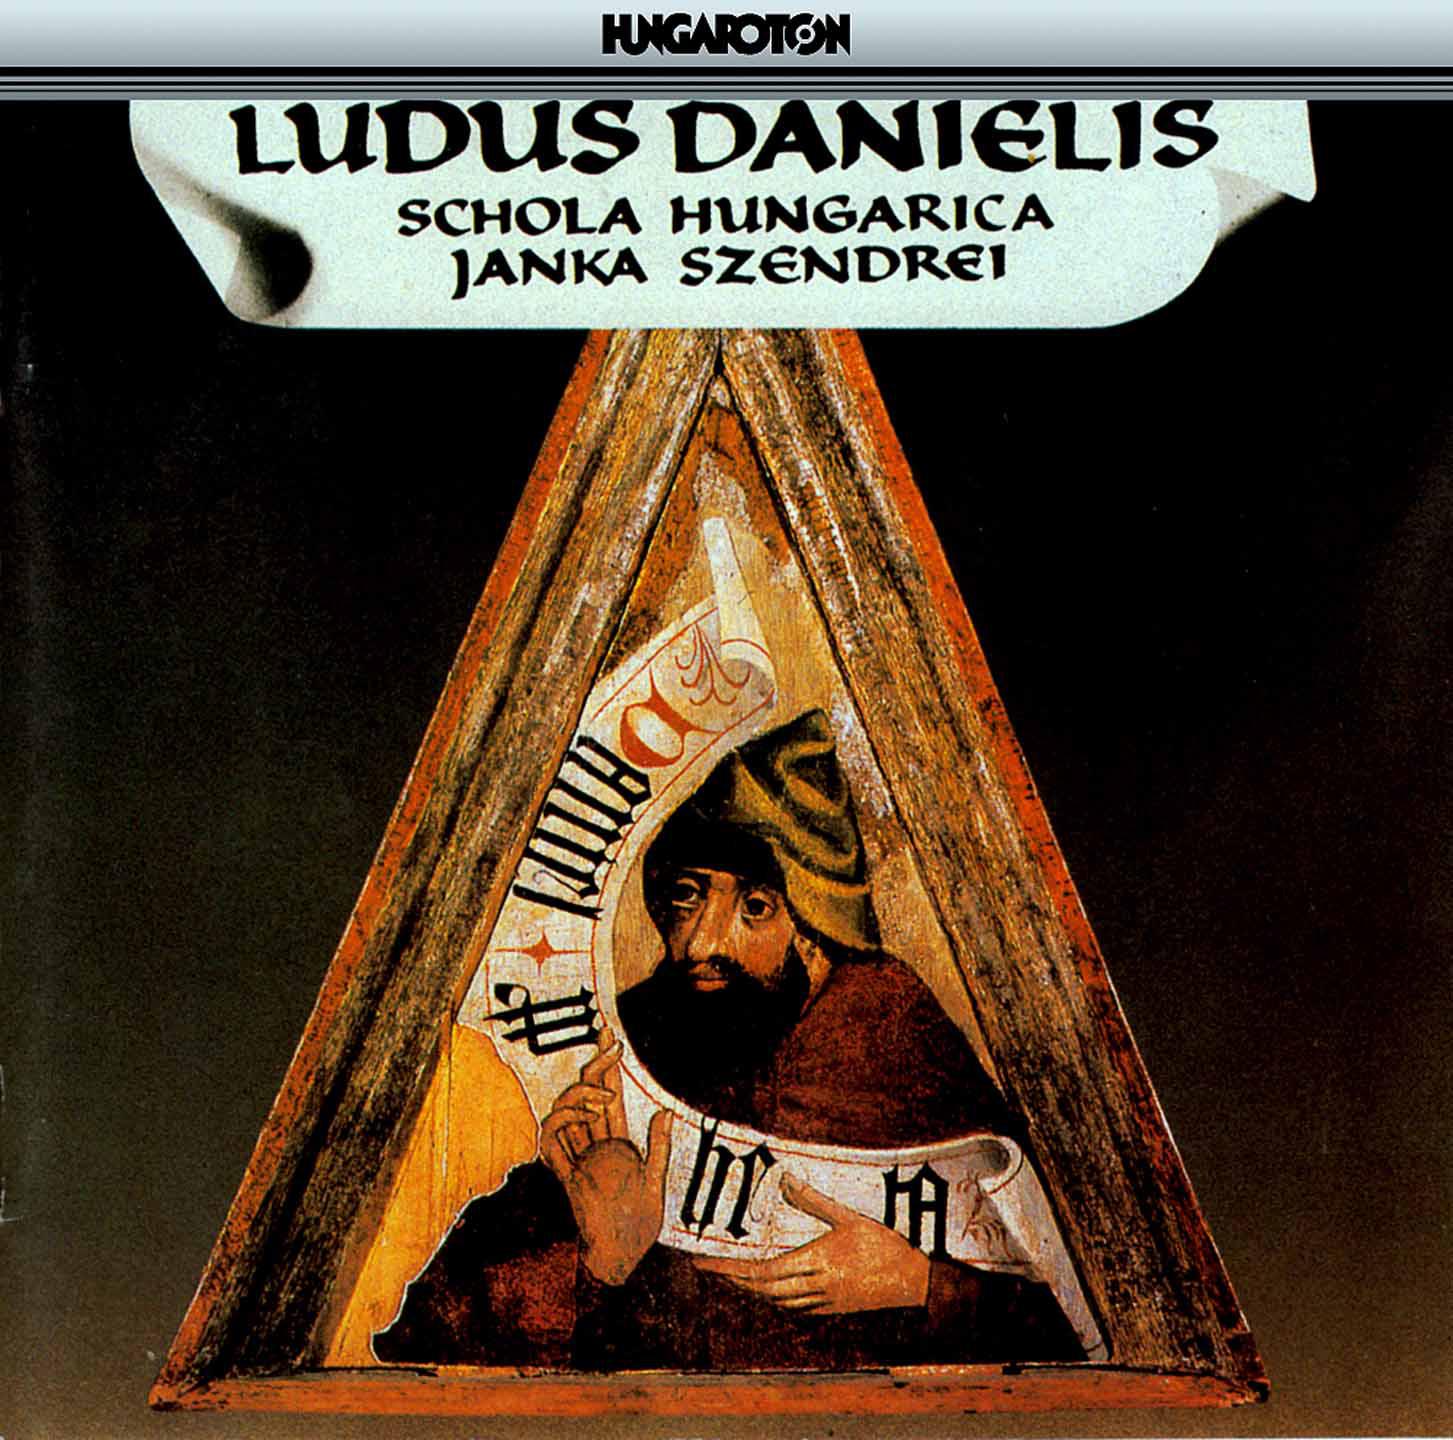 Schola Hungarica - Ludus Danielis (the Play of Daniel) [Egerton Manuscript 2615]:Ex regali venit imperio